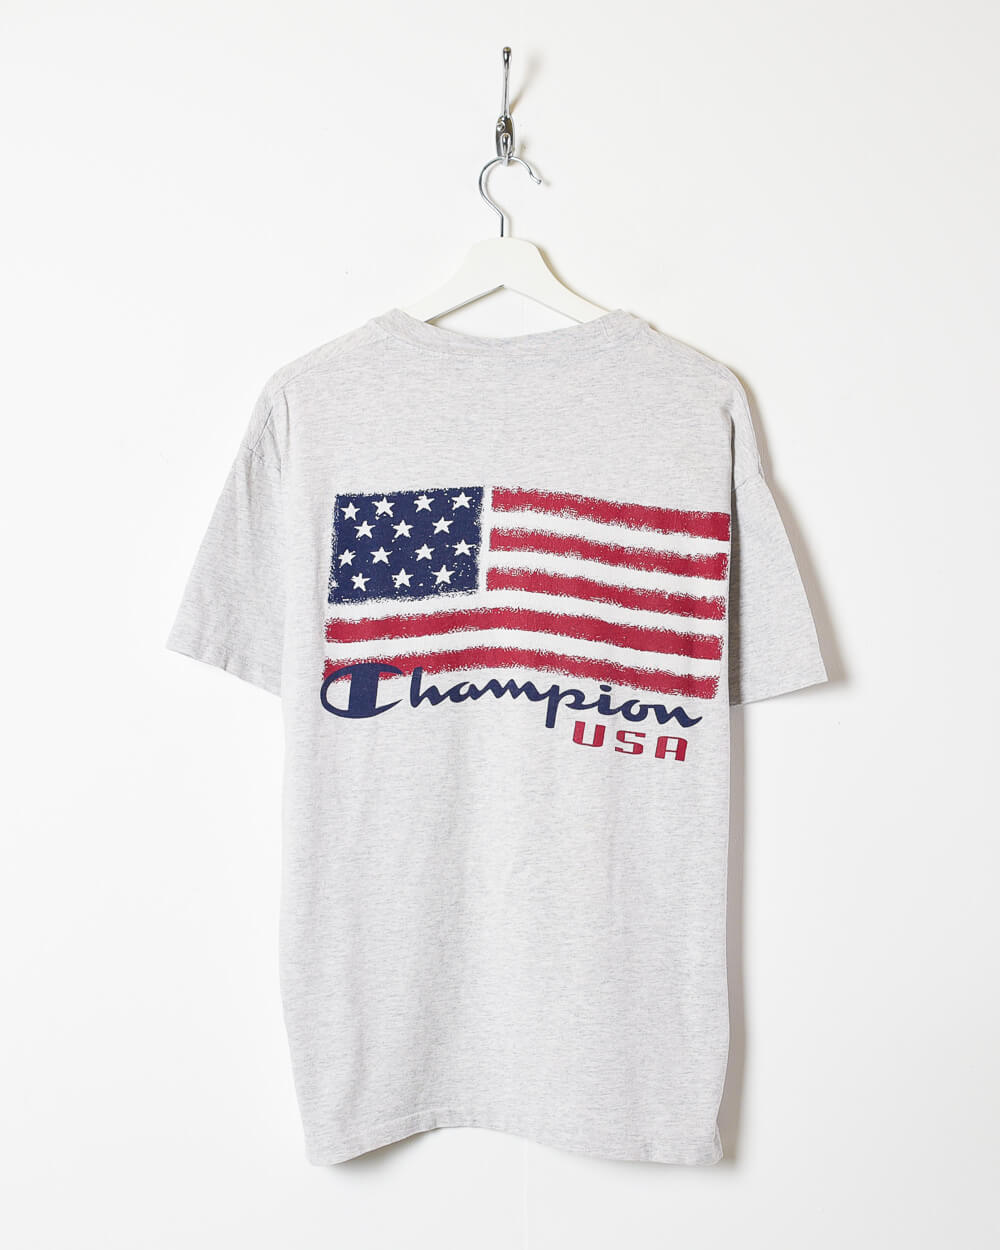 Stone Champion USA T-Shirt - Large